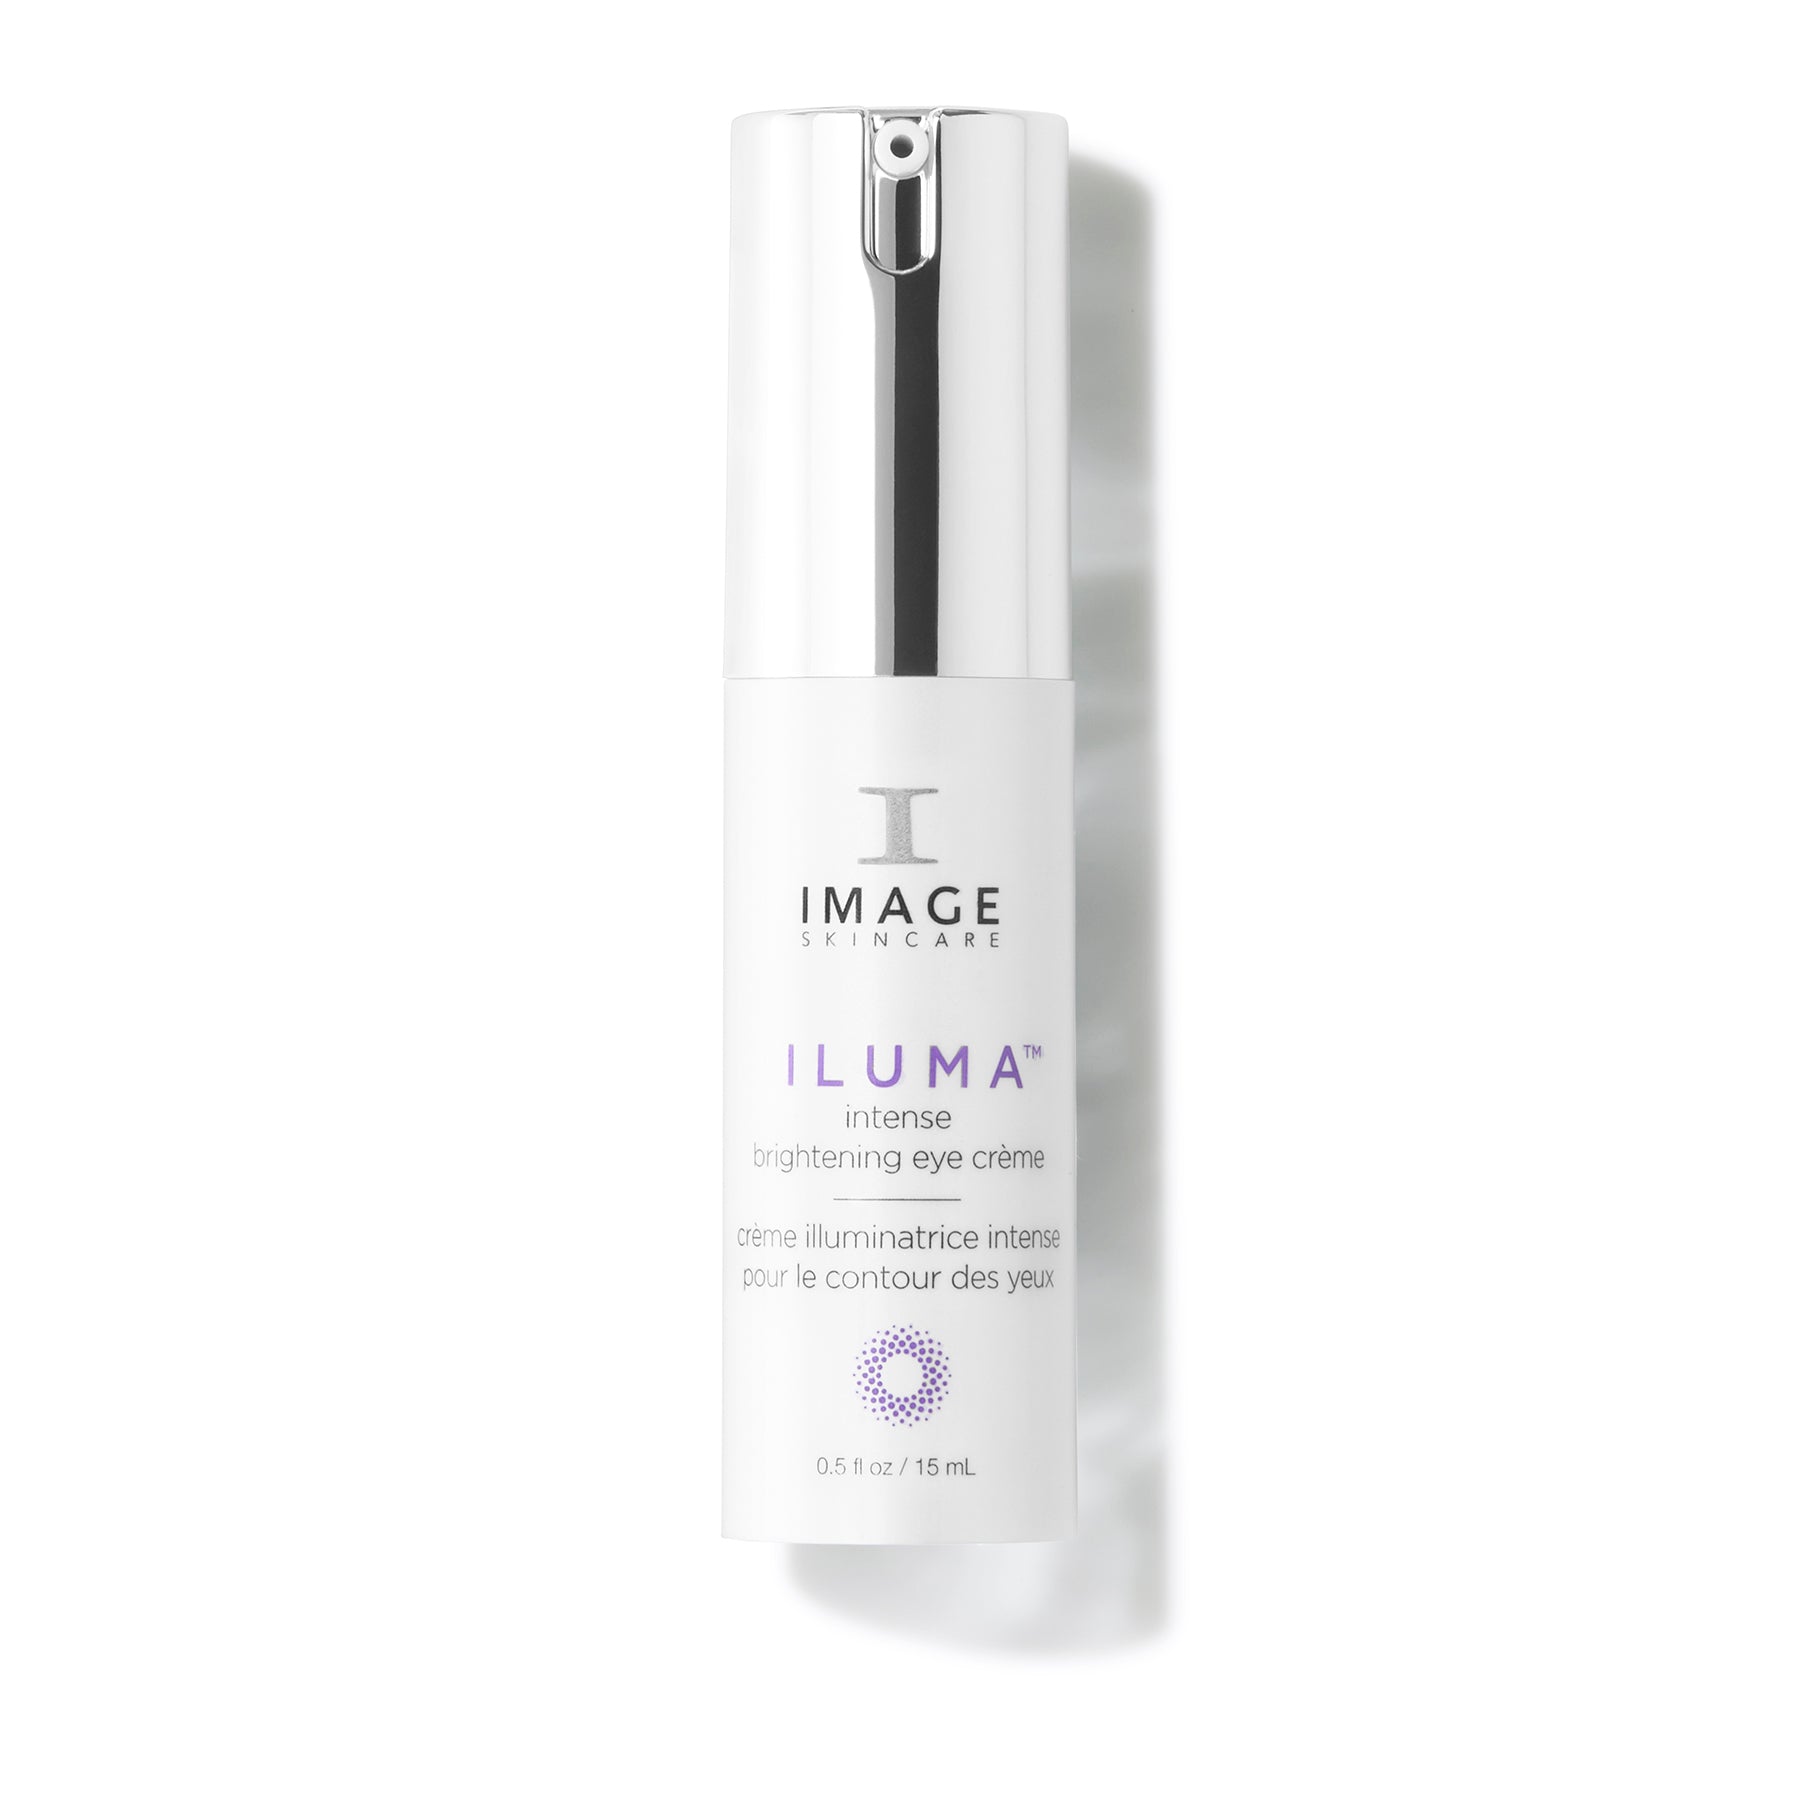 Image Skincare Iluma Intense Brightening Eye Creme - 0.5 oz bottle